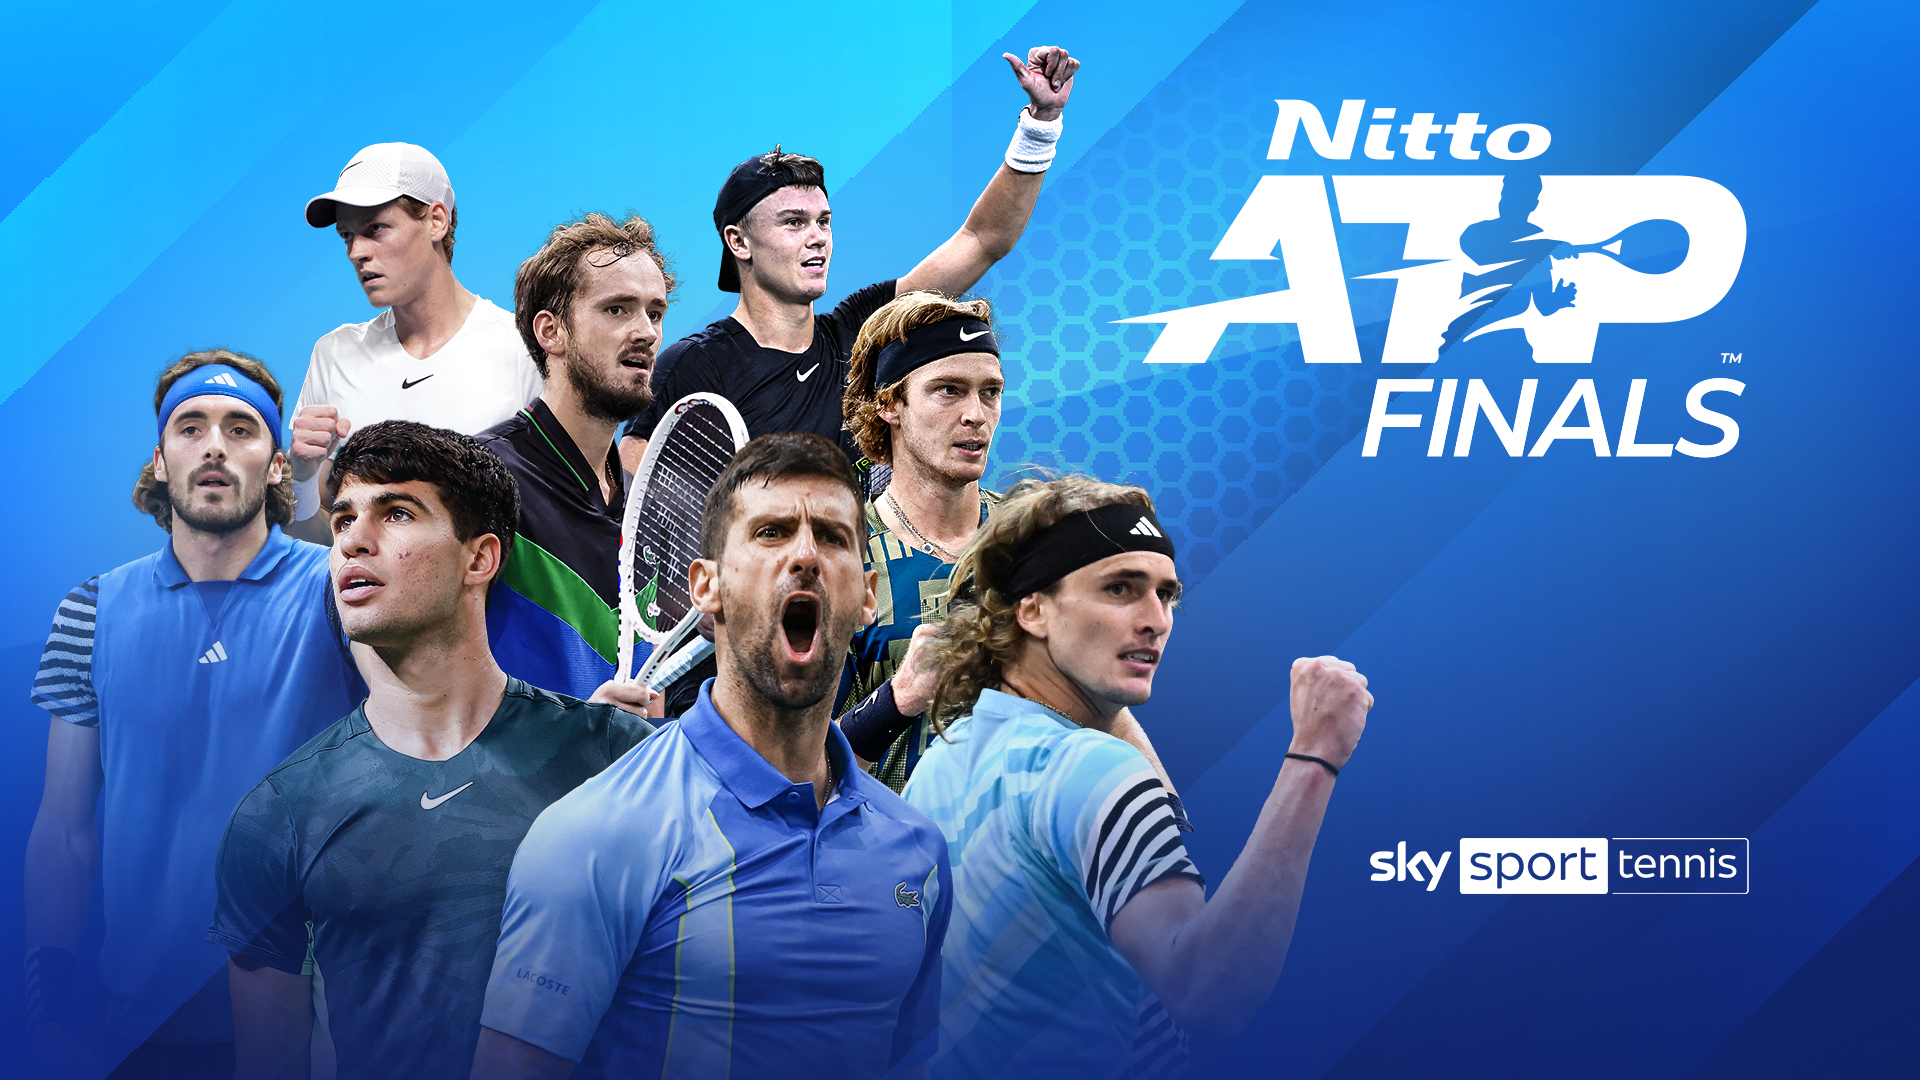 Wird Alexander Zverev erneut Weltmeister? Die Nitto ATP Finals in Turin live und exklusiv ab dem 12